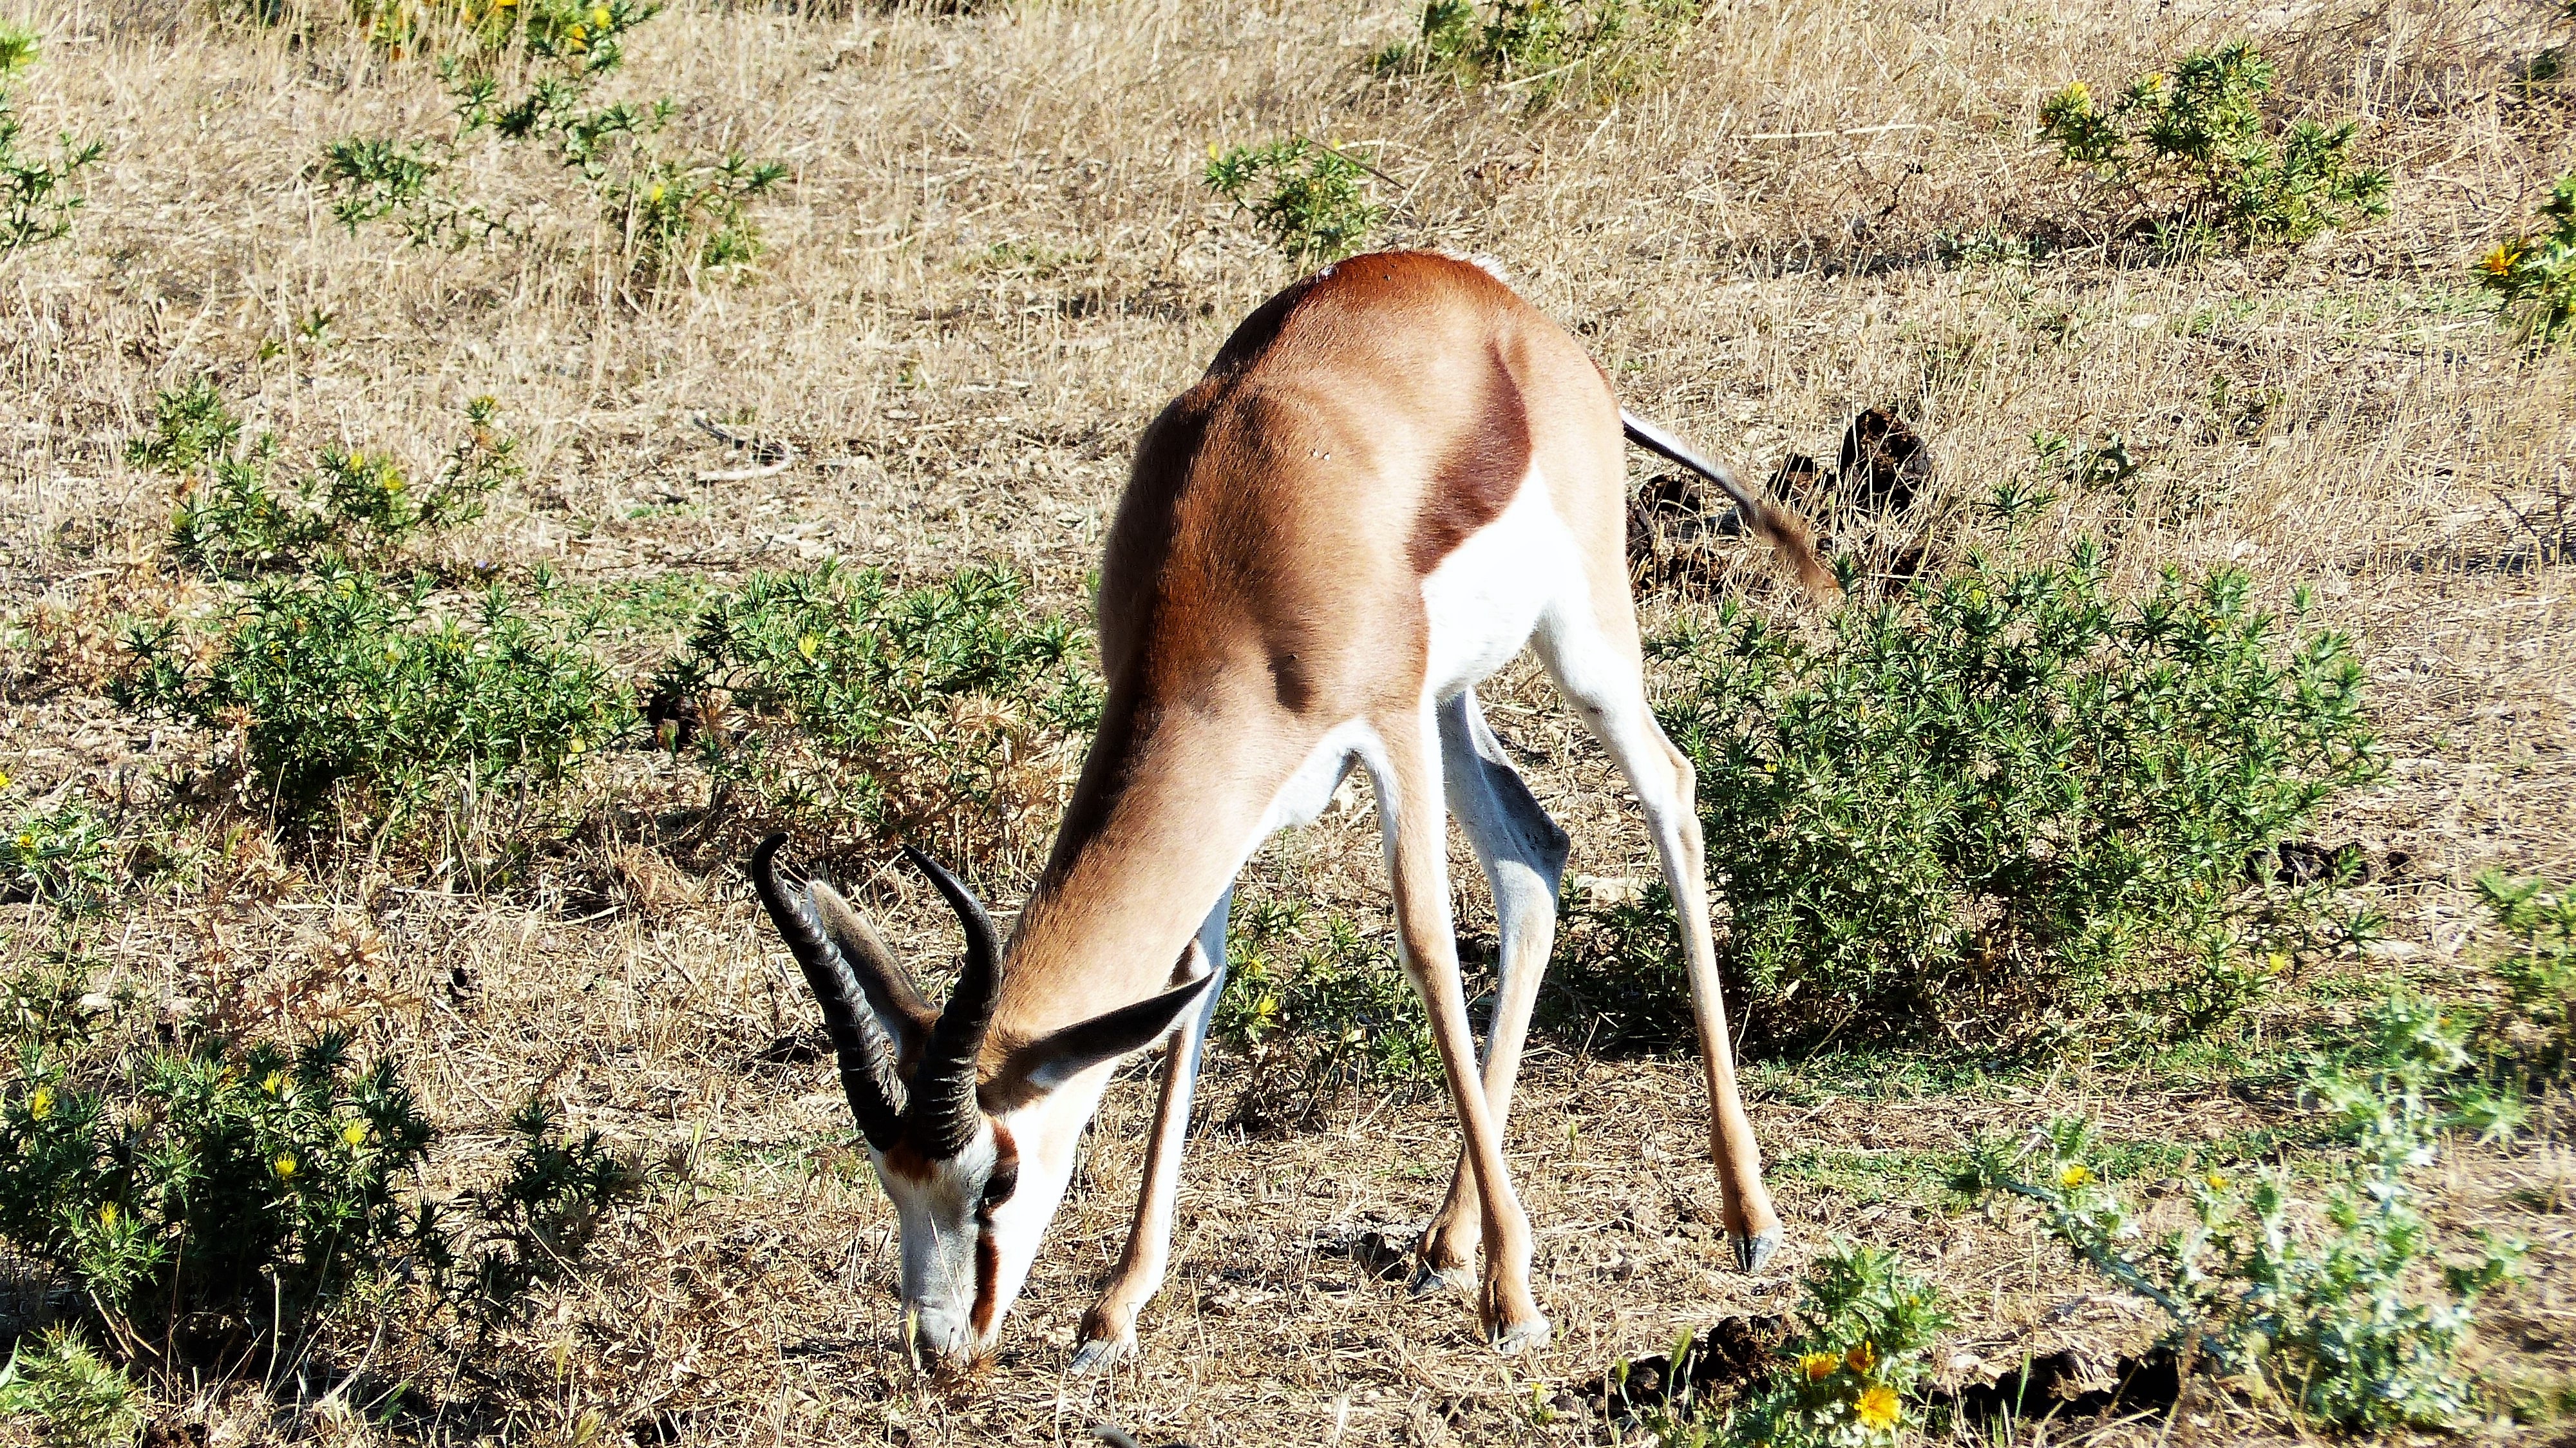 Animal Antelope HD Wallpaper | Background Image